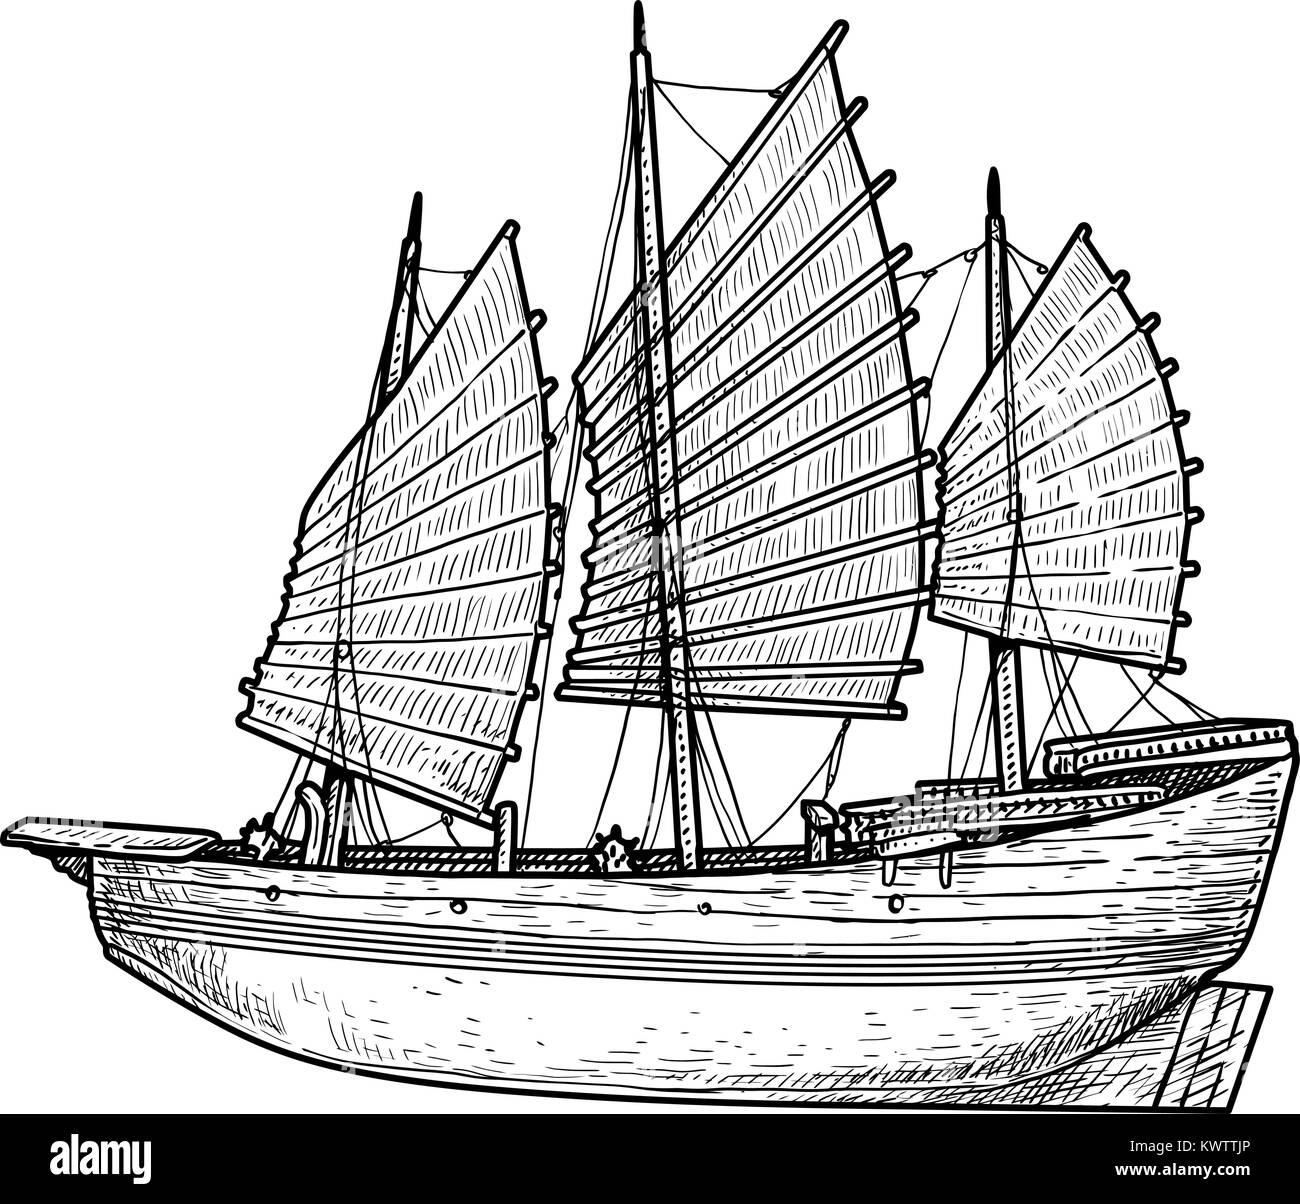 Traditionelles chinesisches dschunkenboot mit rotem segel Schwarzweiß ...